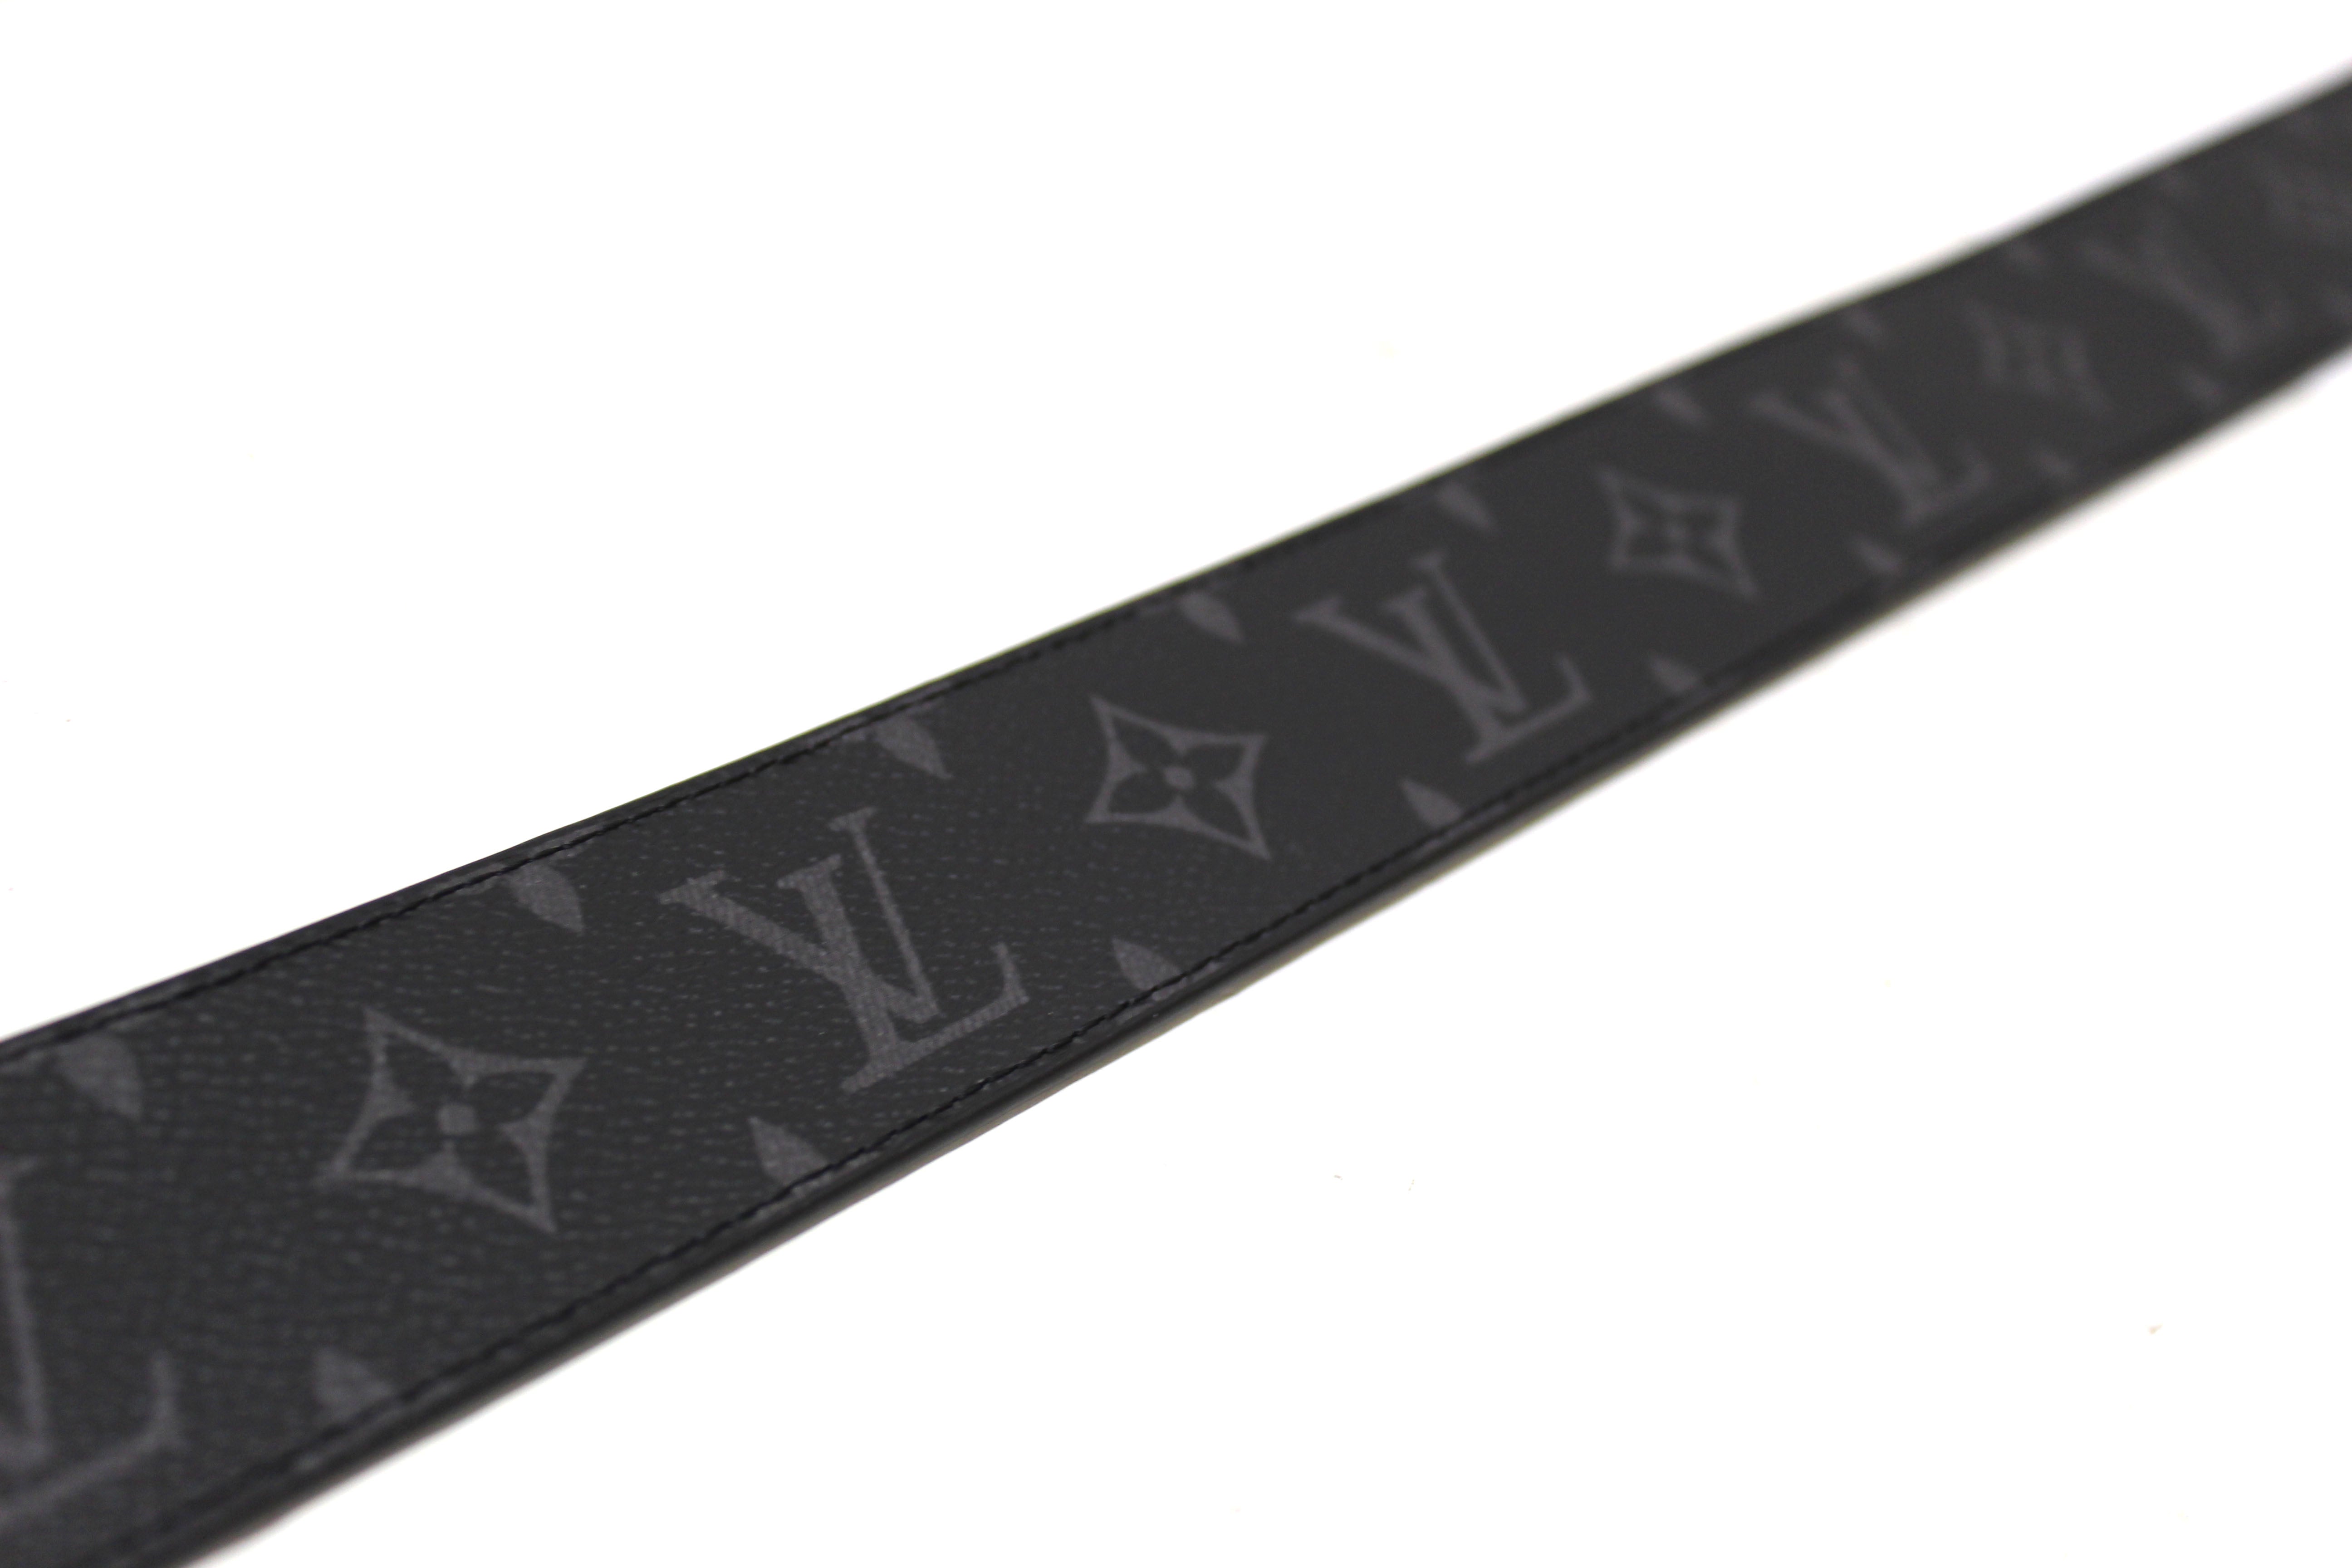 Authentic Louis Vuitton Monogram Eclipse Shake 40mm Reversible Belt Size 110/44